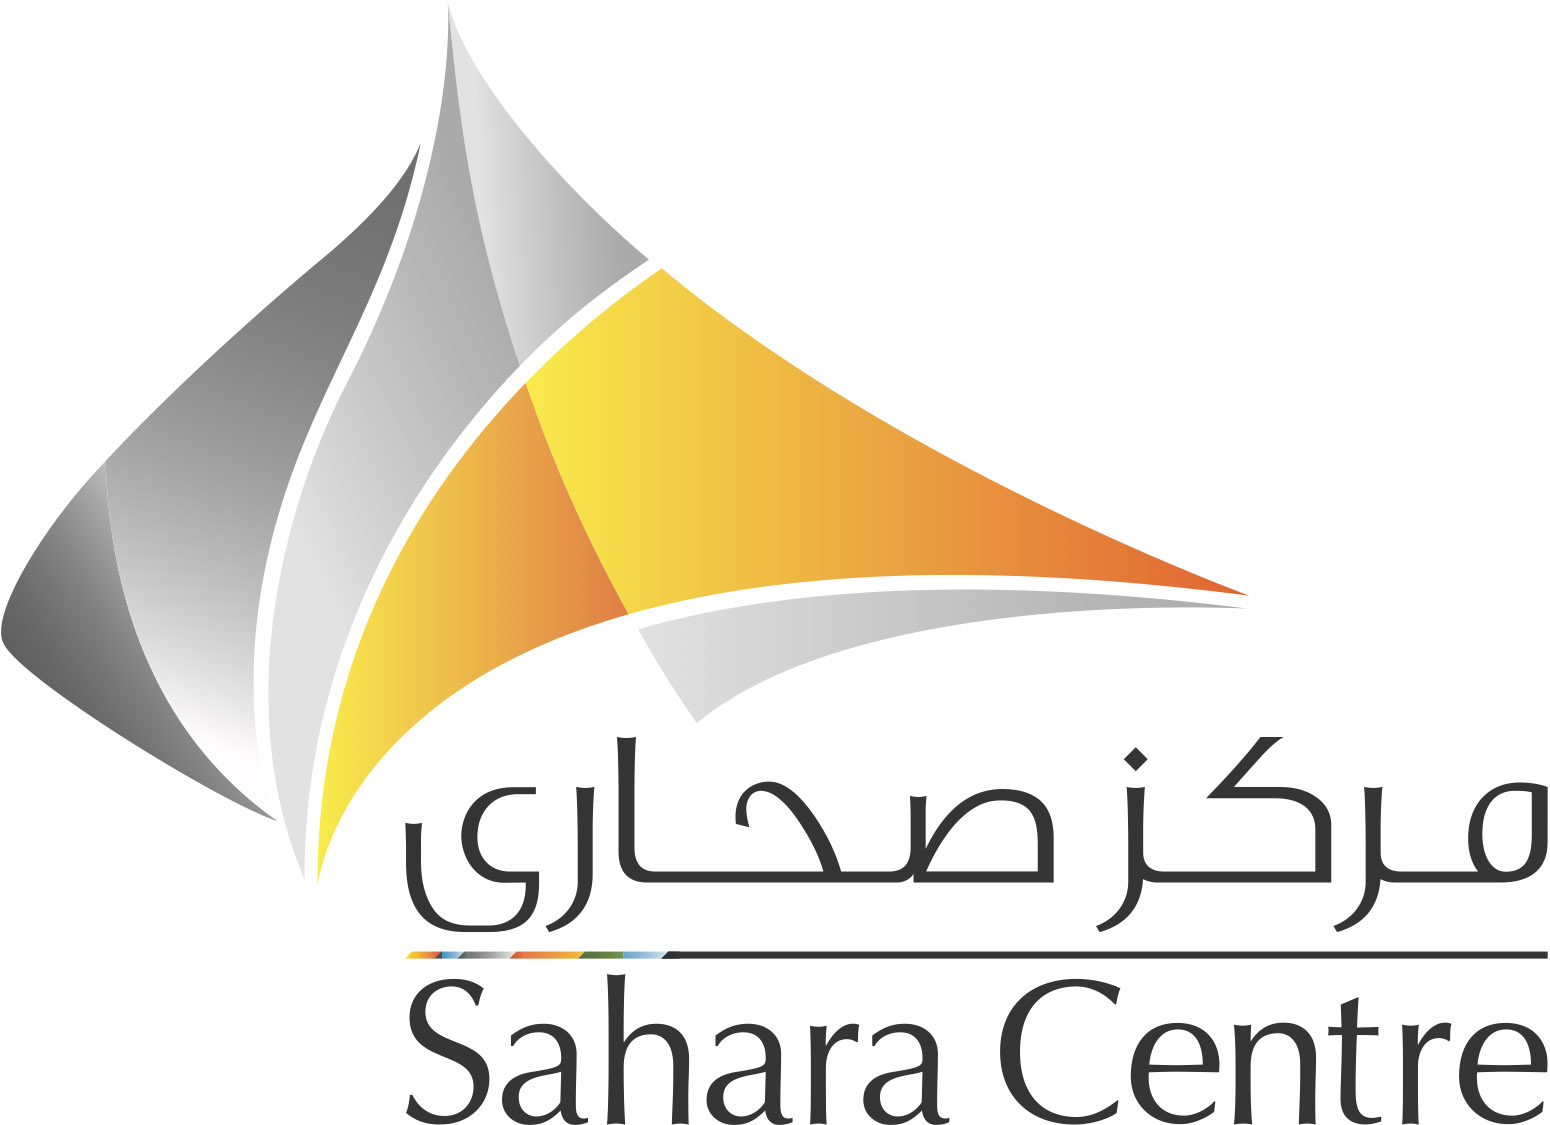 Sahara centre